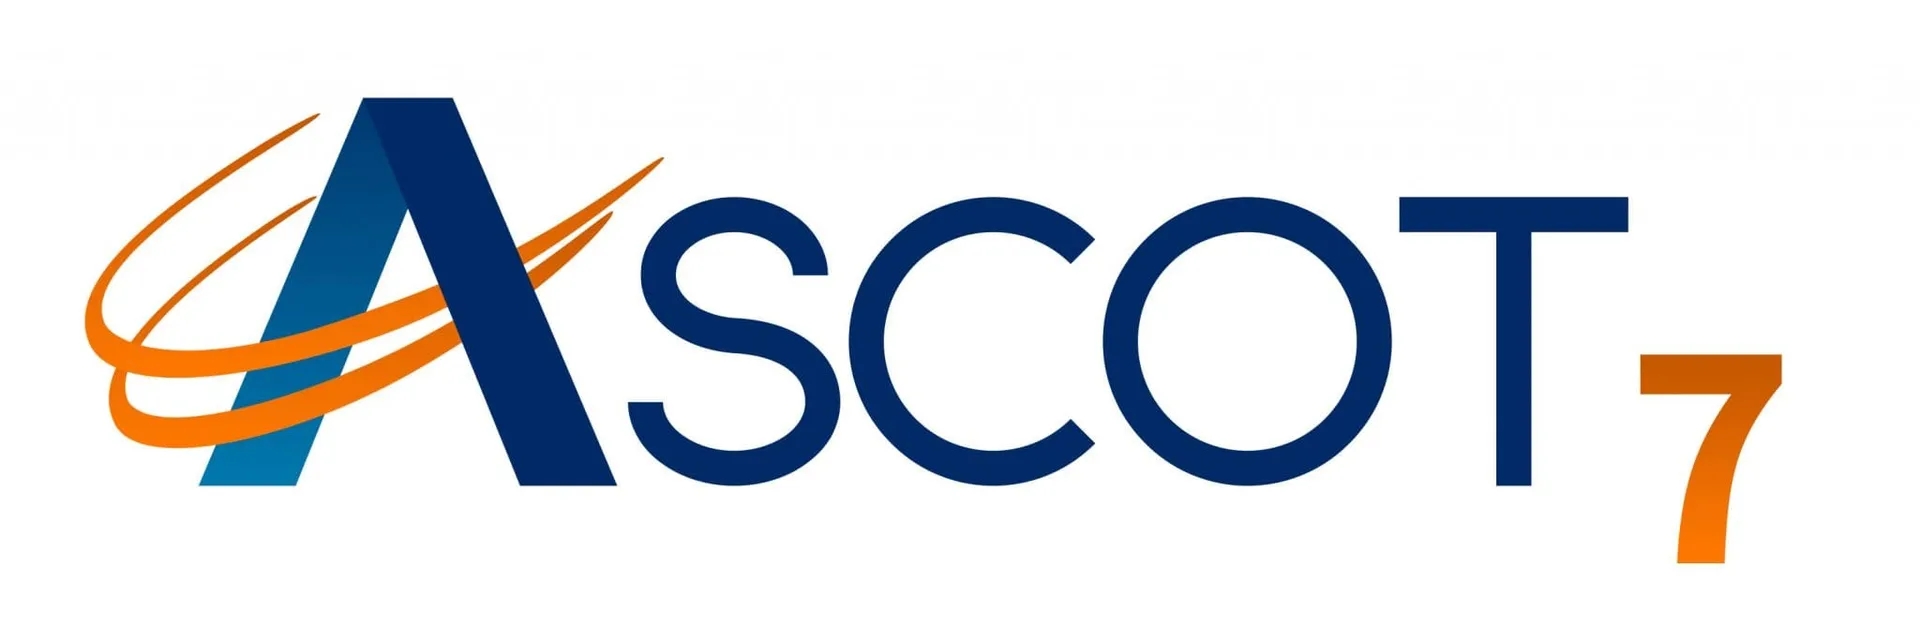 ASCOT 7 logo